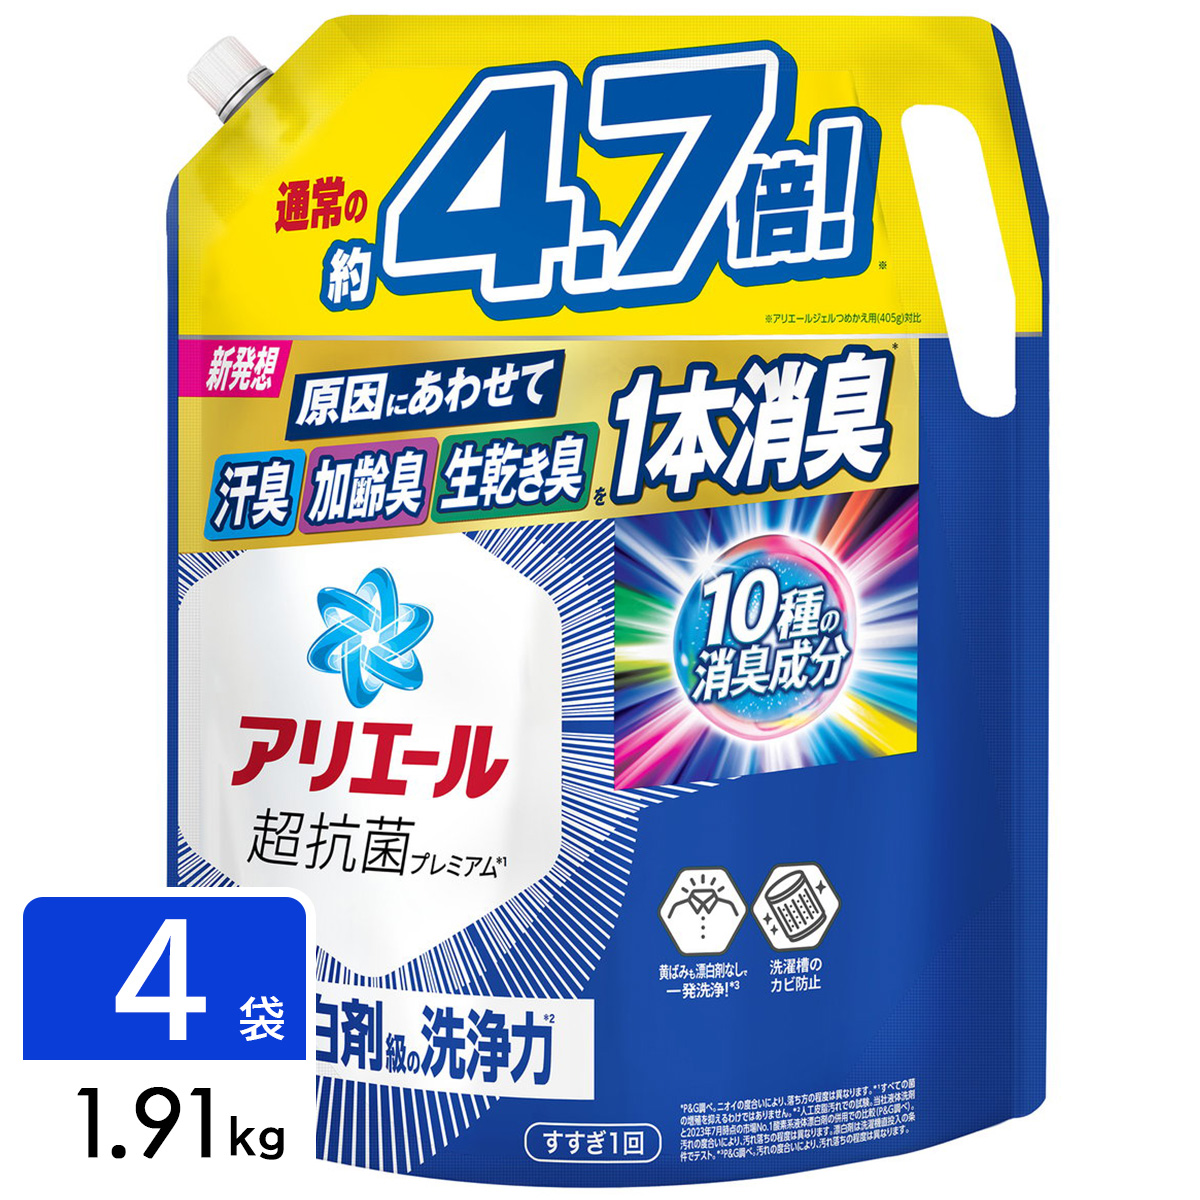 アリエール ジェル 洗濯洗剤 詰め替え 超ウルトラジャンボサイズ 1.91kg×4袋